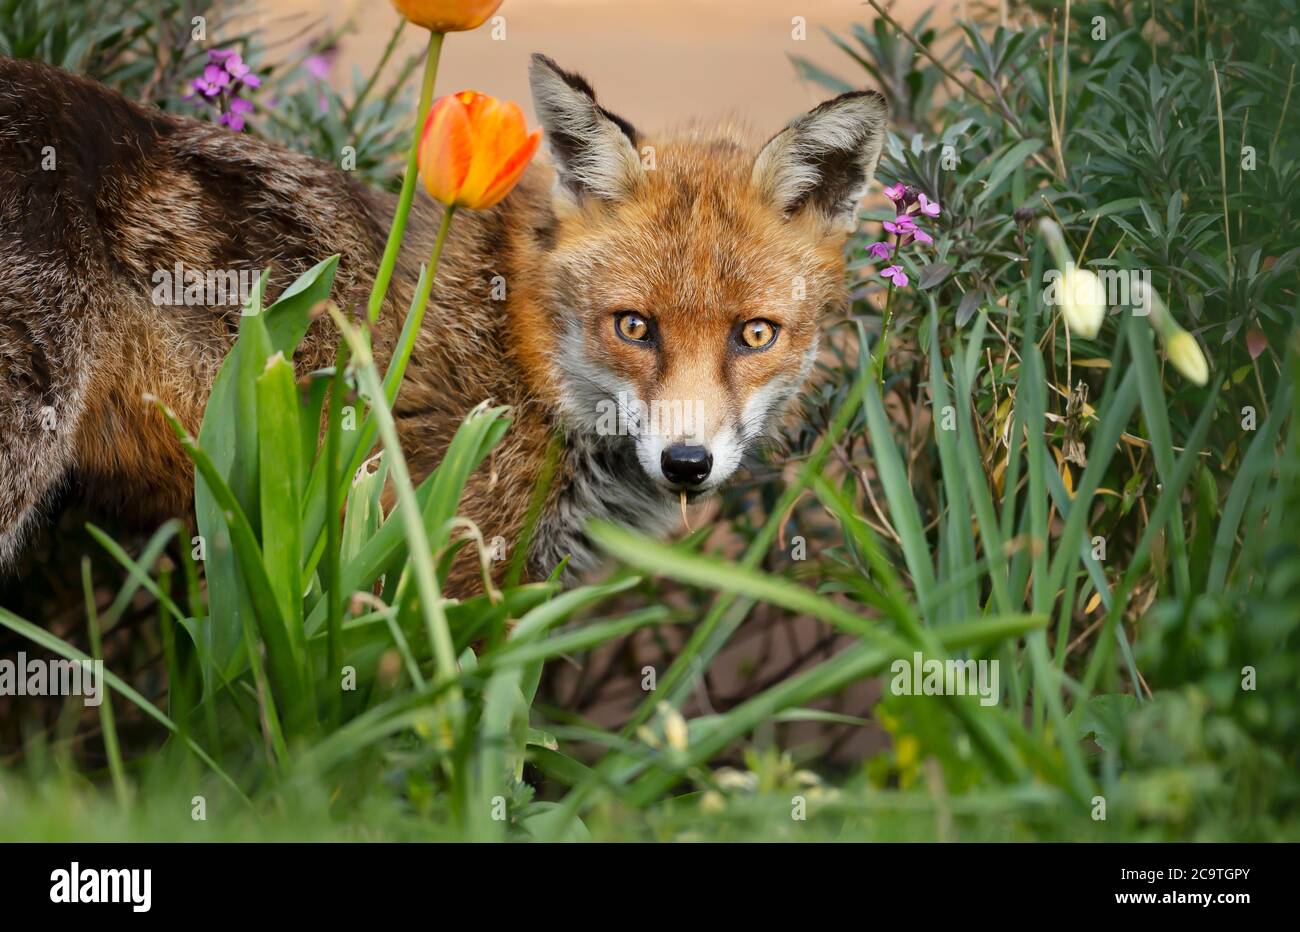 Gros plan d'un renard roux (Vulpes vulpes) debout parmi des tulipes et des jonquilles dans un jardin, printemps au Royaume-Uni. Banque D'Images